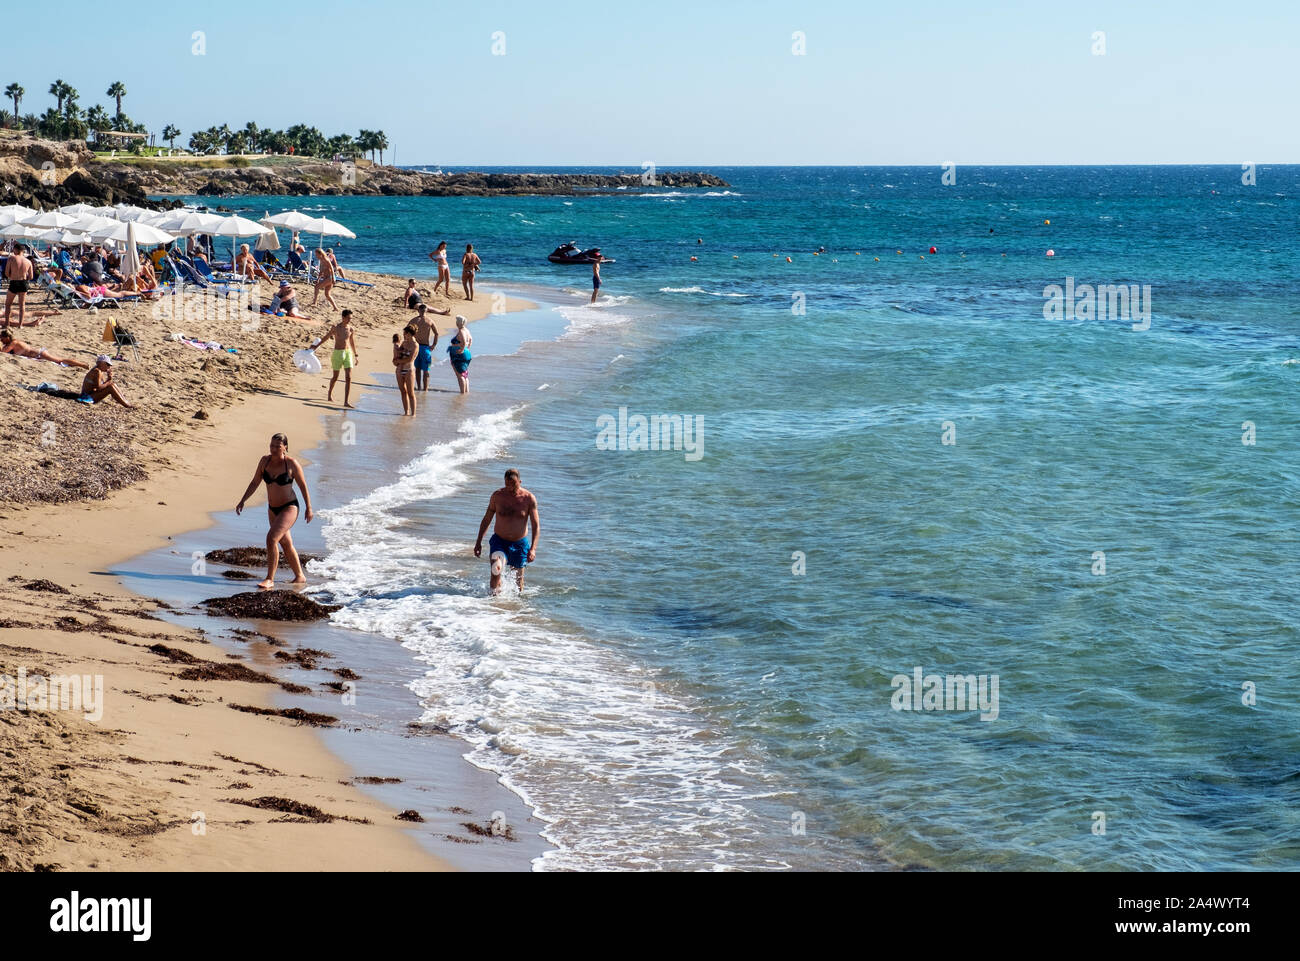 Les vacanciers sur une plage de sable fin dans le centre touristique de Paphos, Chypre. Banque D'Images